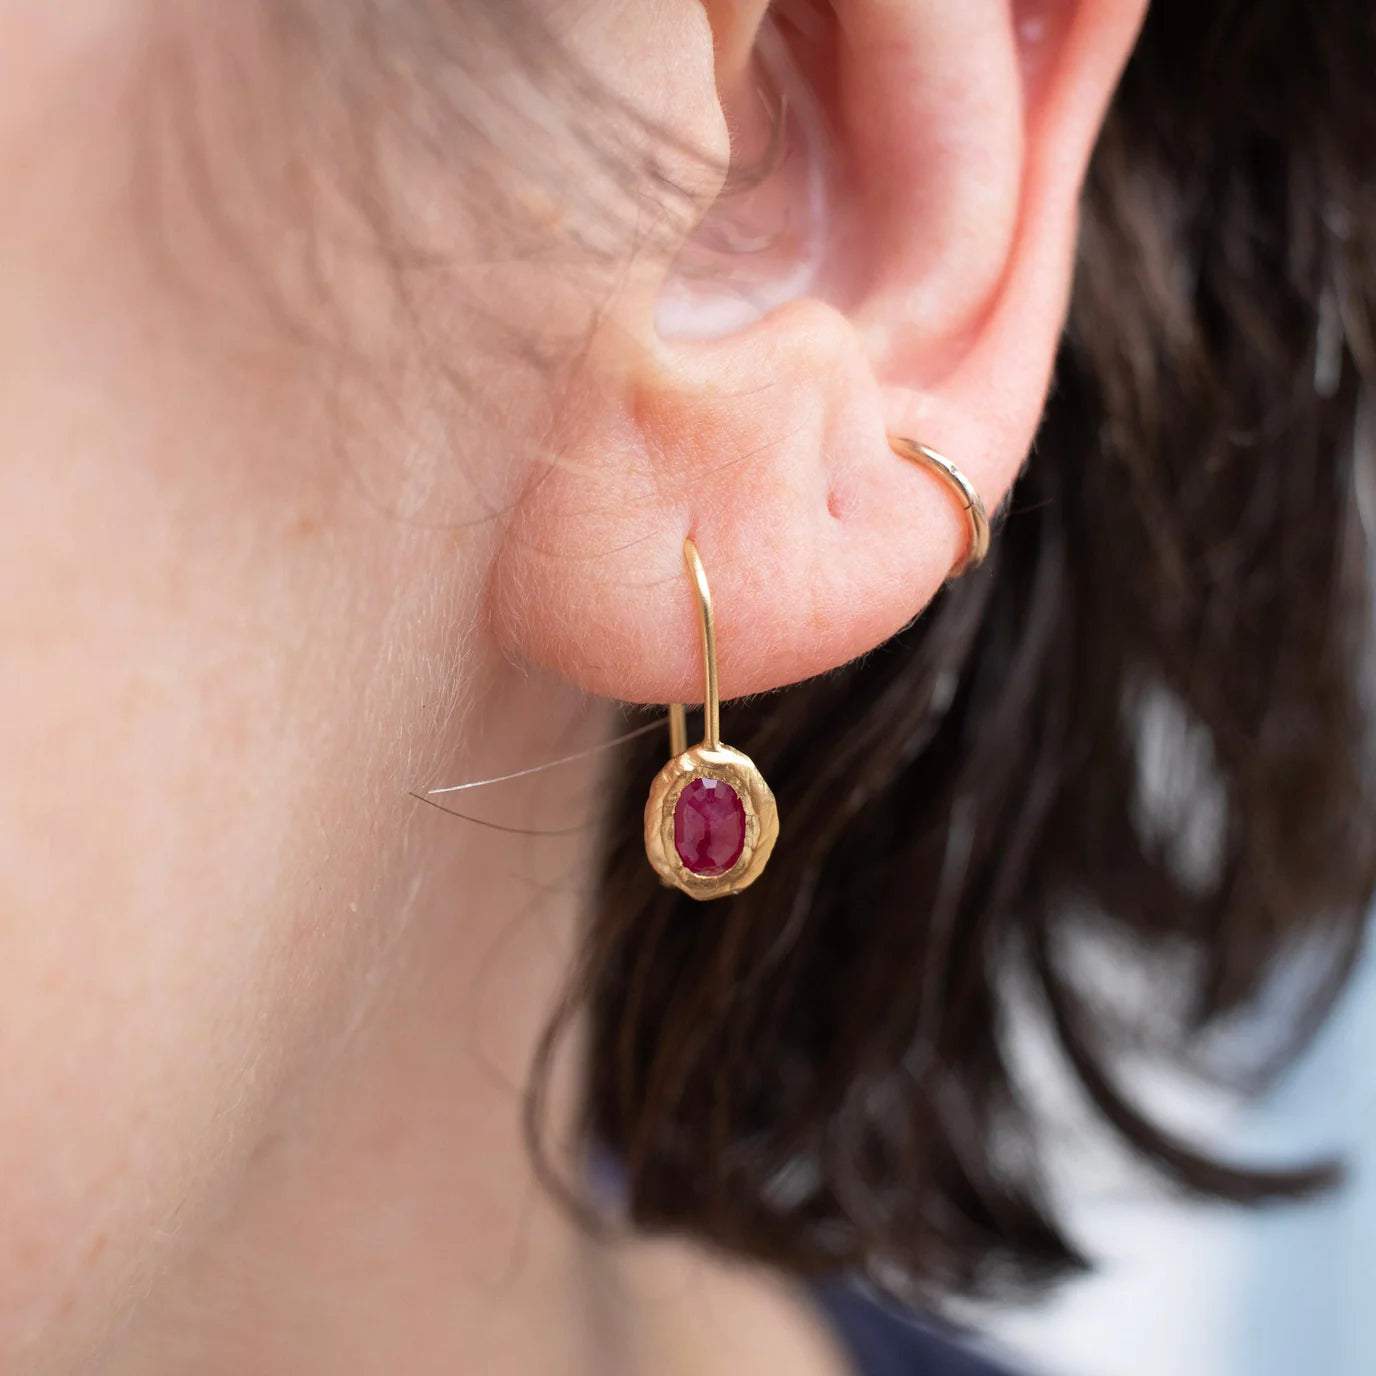 oval fixed hook earrings - ruby